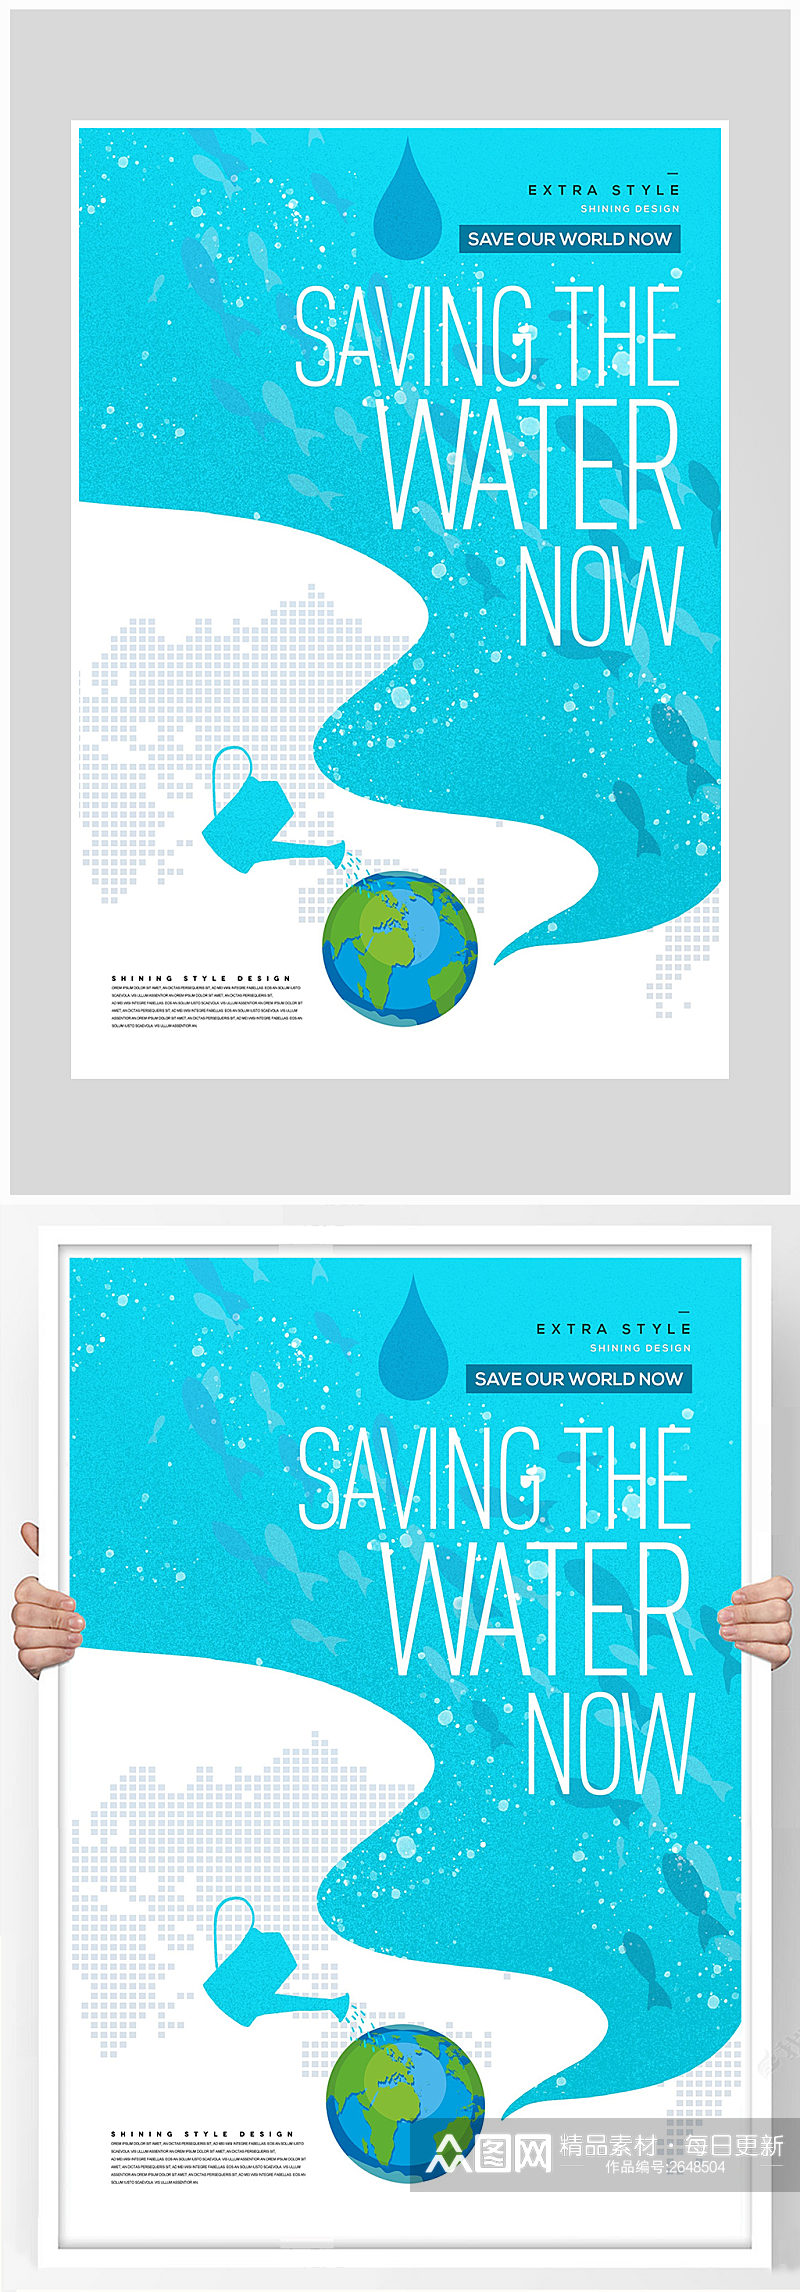 简约保护水资源保护环境海报设计素材